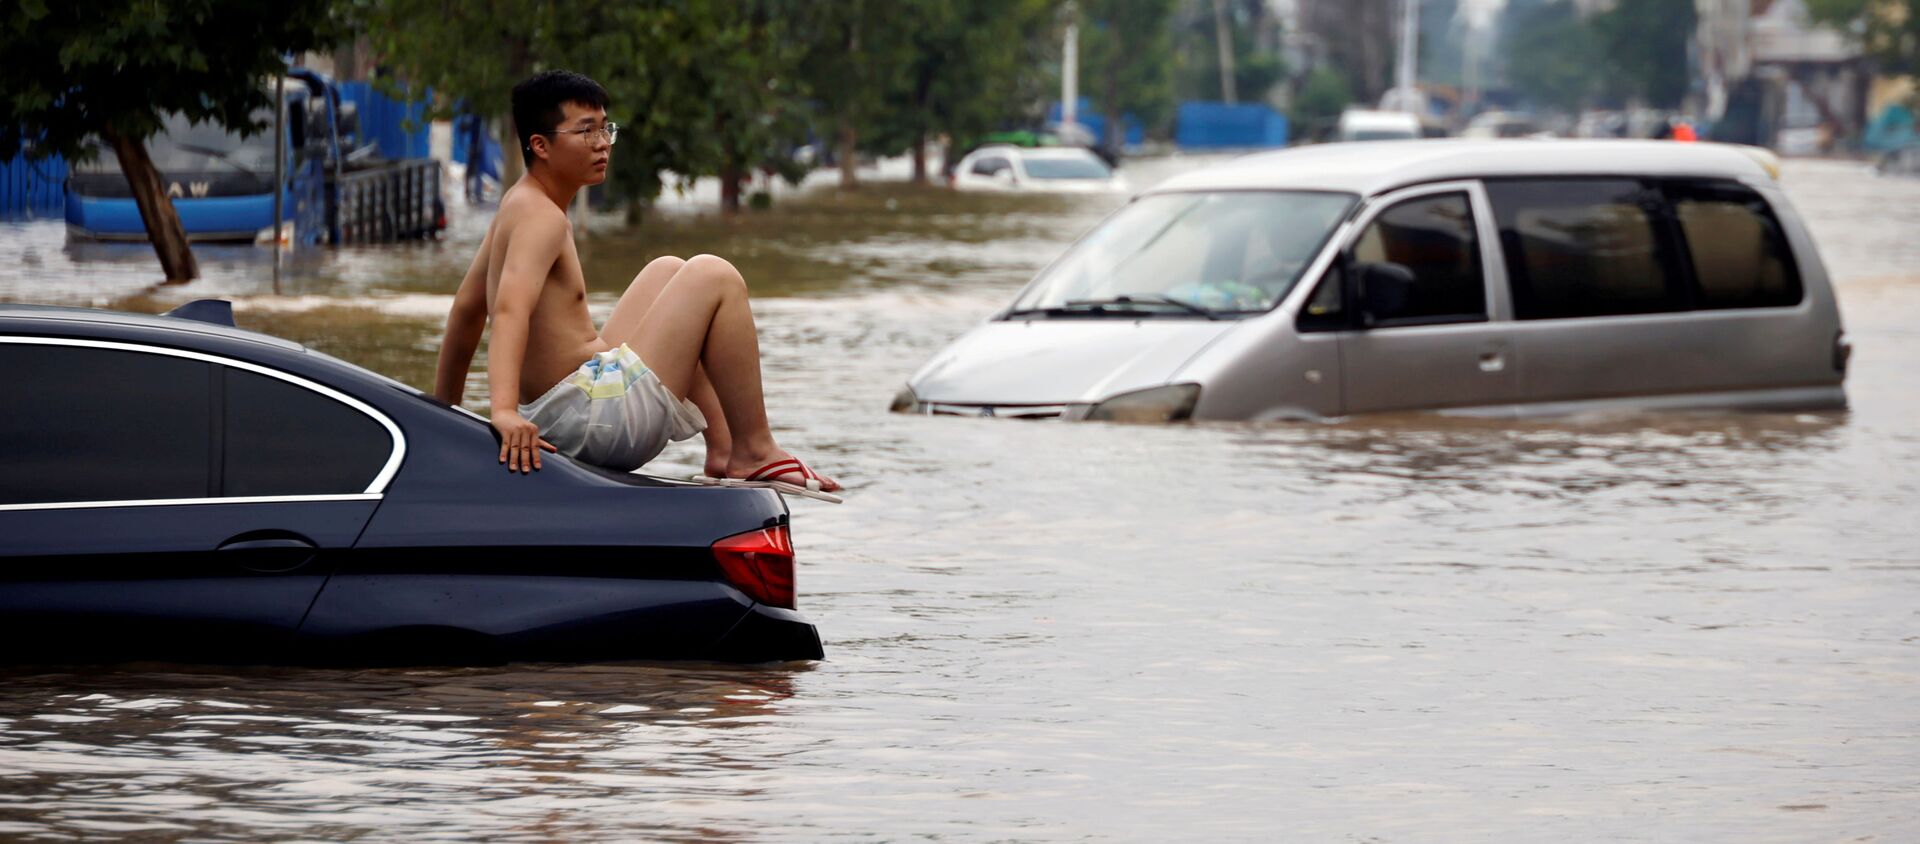 Một người đàn ông ngồi trên ô tô mắc kẹt trên con đường ngập nước sau trận mưa lớn ở Trịnh Châu, tỉnh Hà Nam, Trung Quốс - Sputnik Việt Nam, 1920, 02.08.2021